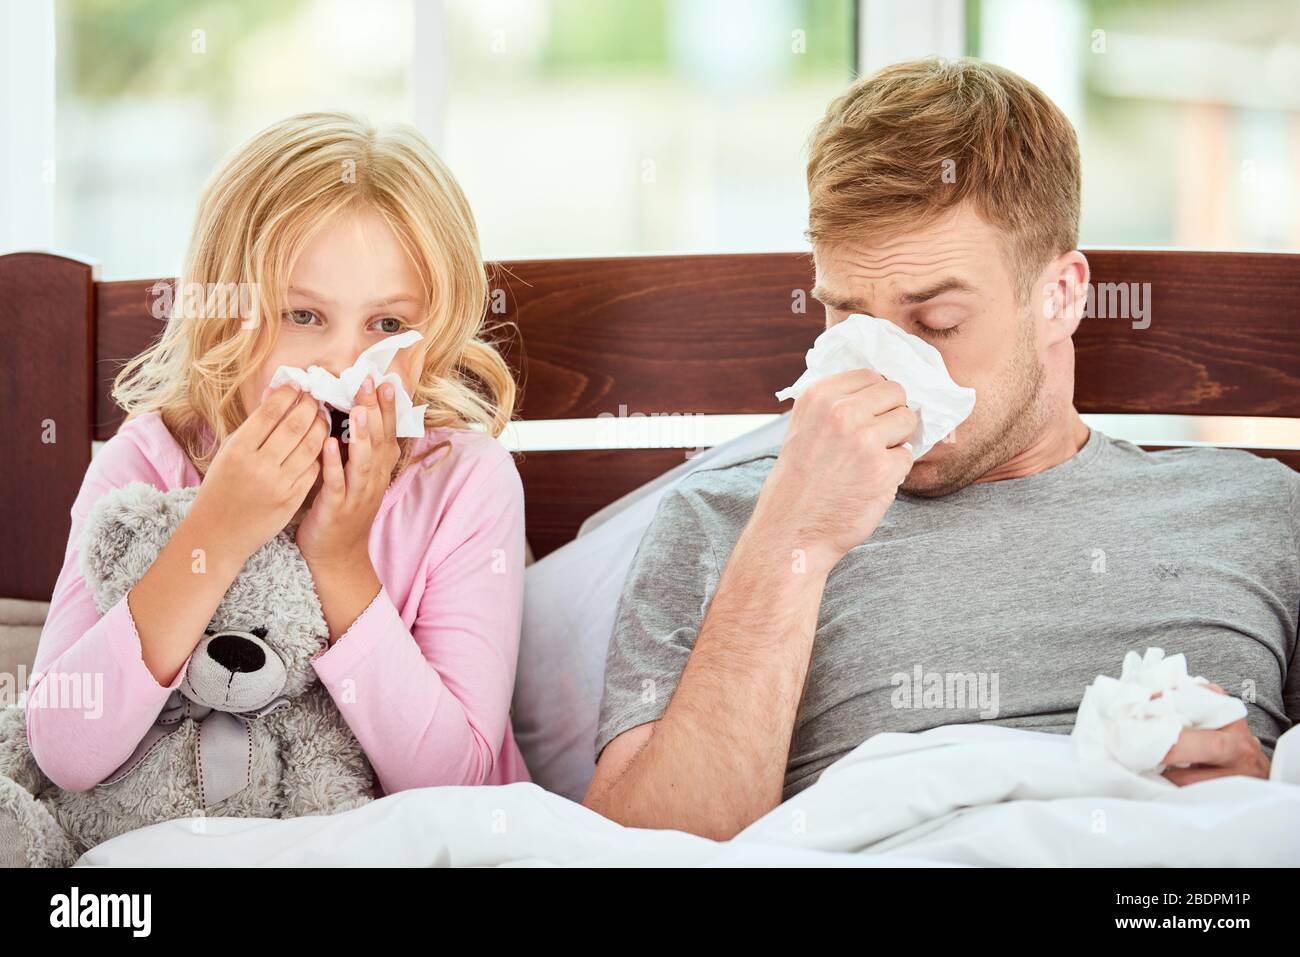 Der junge Vater und seine Tochter leiden an Grippe oder kalter und laufender Nase, während sie zu Hause zusammen im Bett liegen. Viruserkrankung. Coronavirus-Konzept. Kranke Familie zu Hause. Gesundheitskonzept Stockfoto